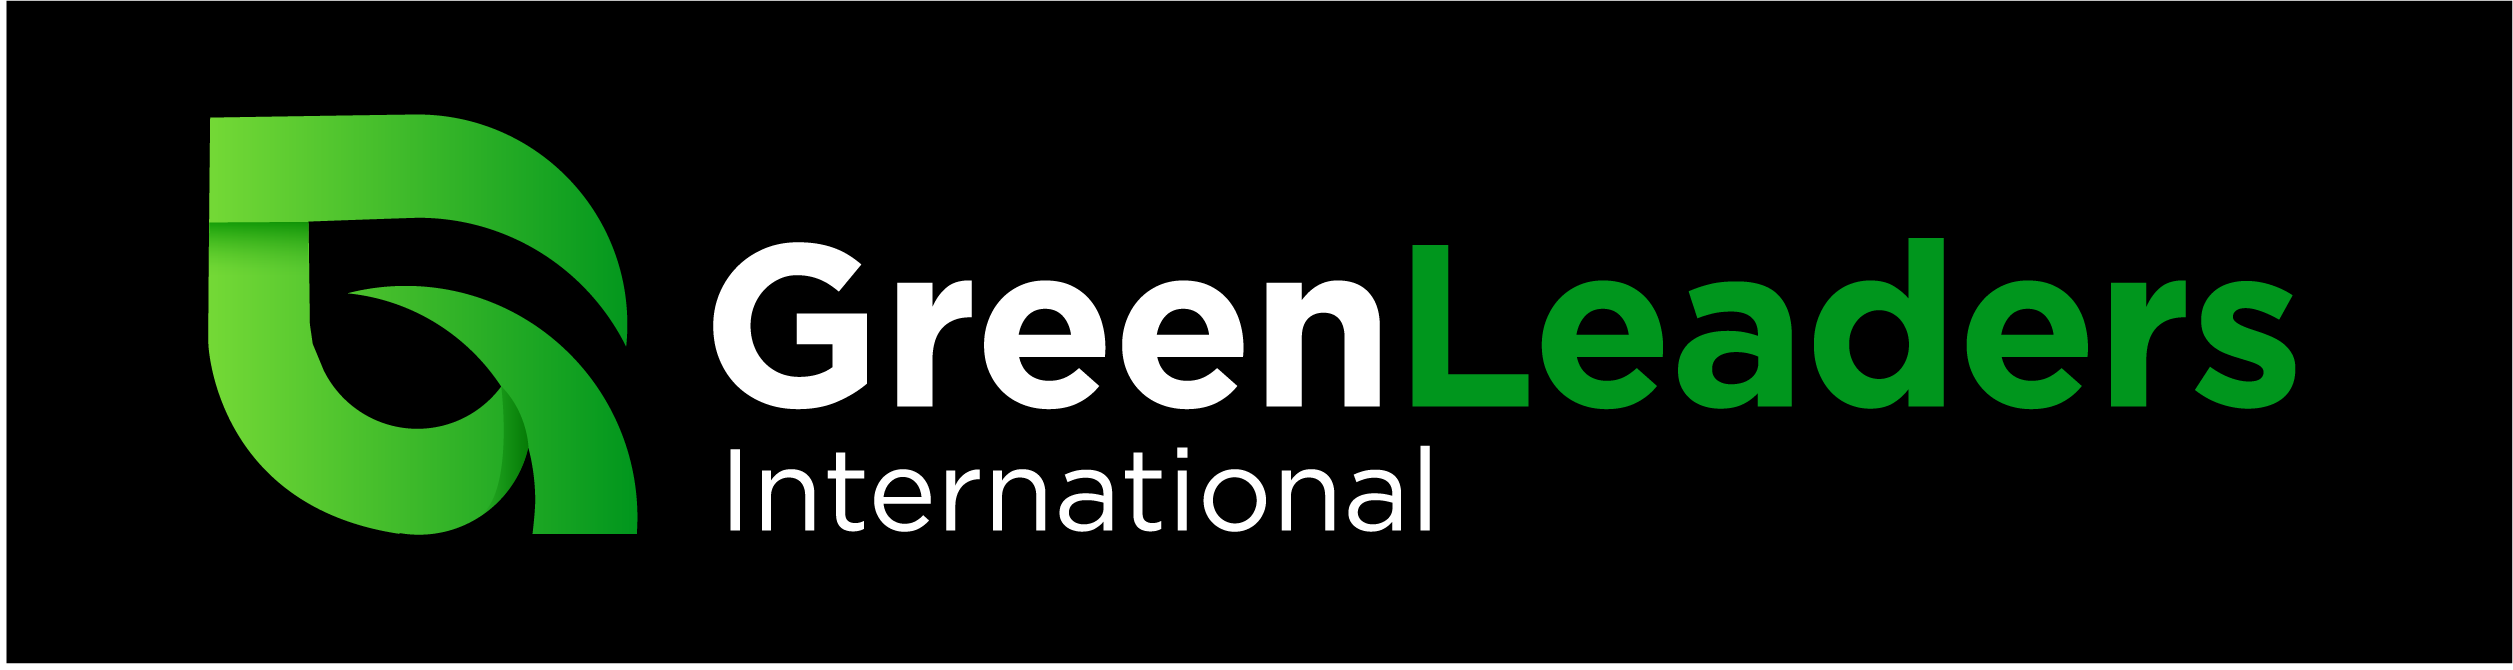 GreenLeaders International